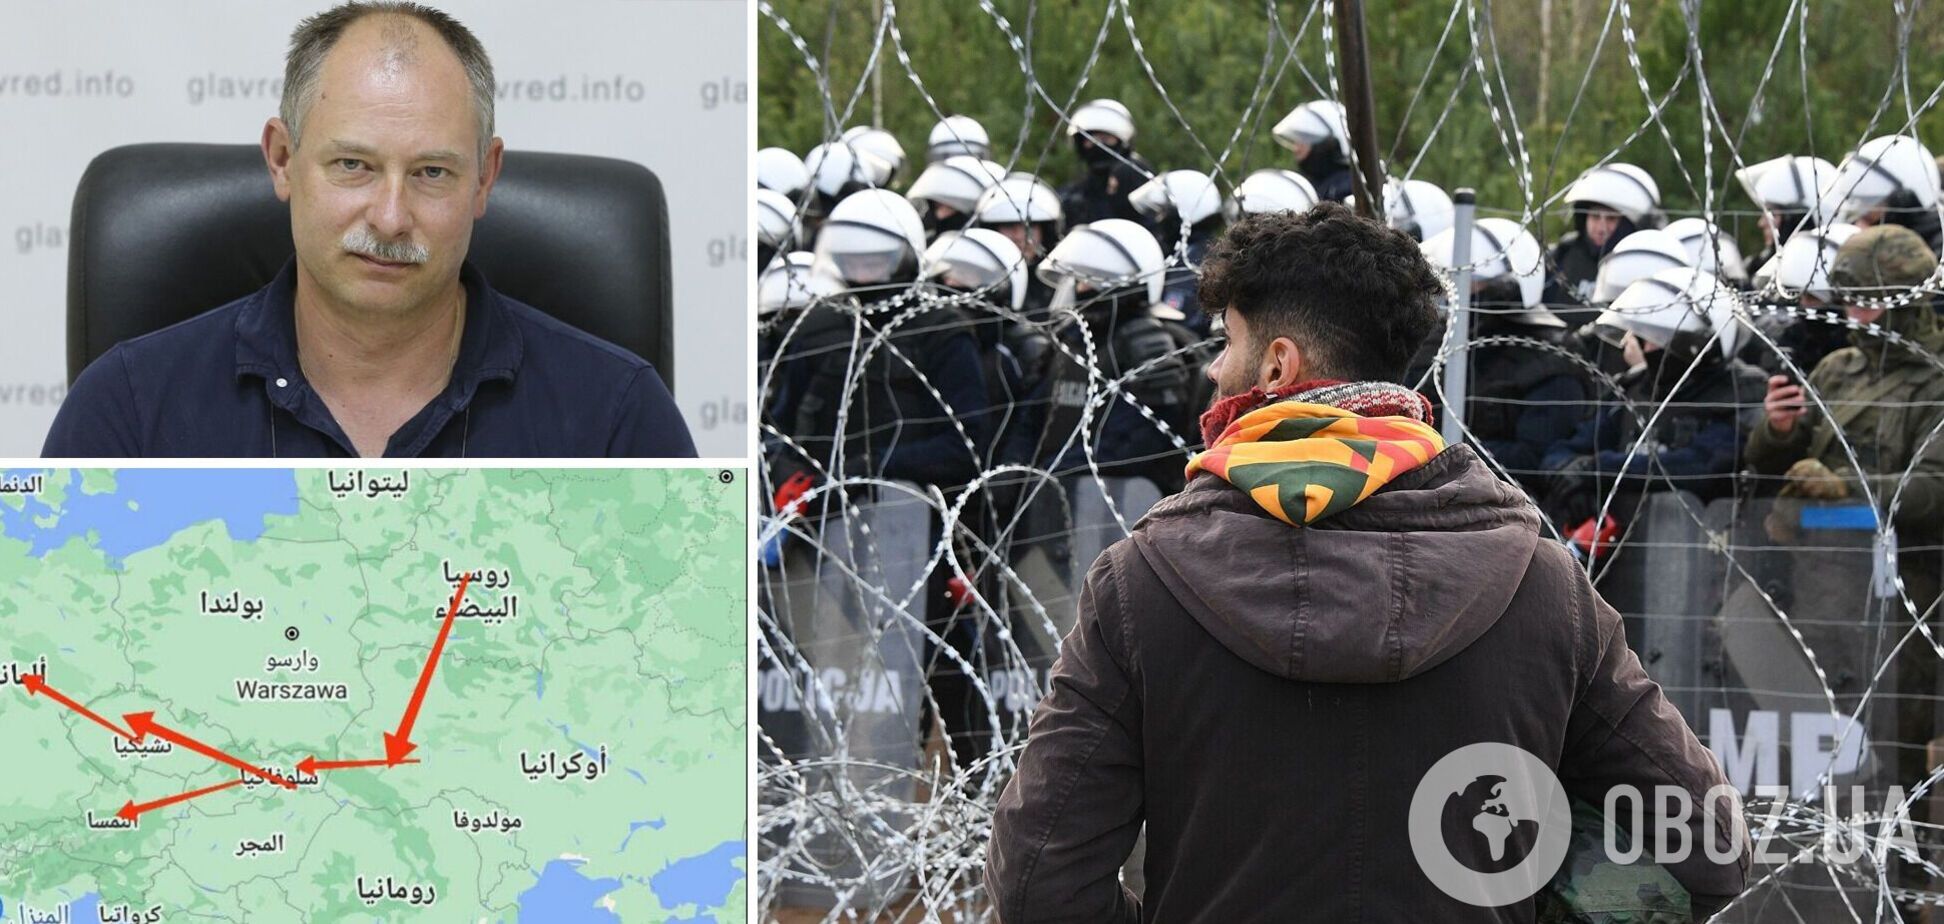 Жданов: мигранты могут пойти в Украину, нужно срочно укреплять границу и делать засады. Блиц-интервью